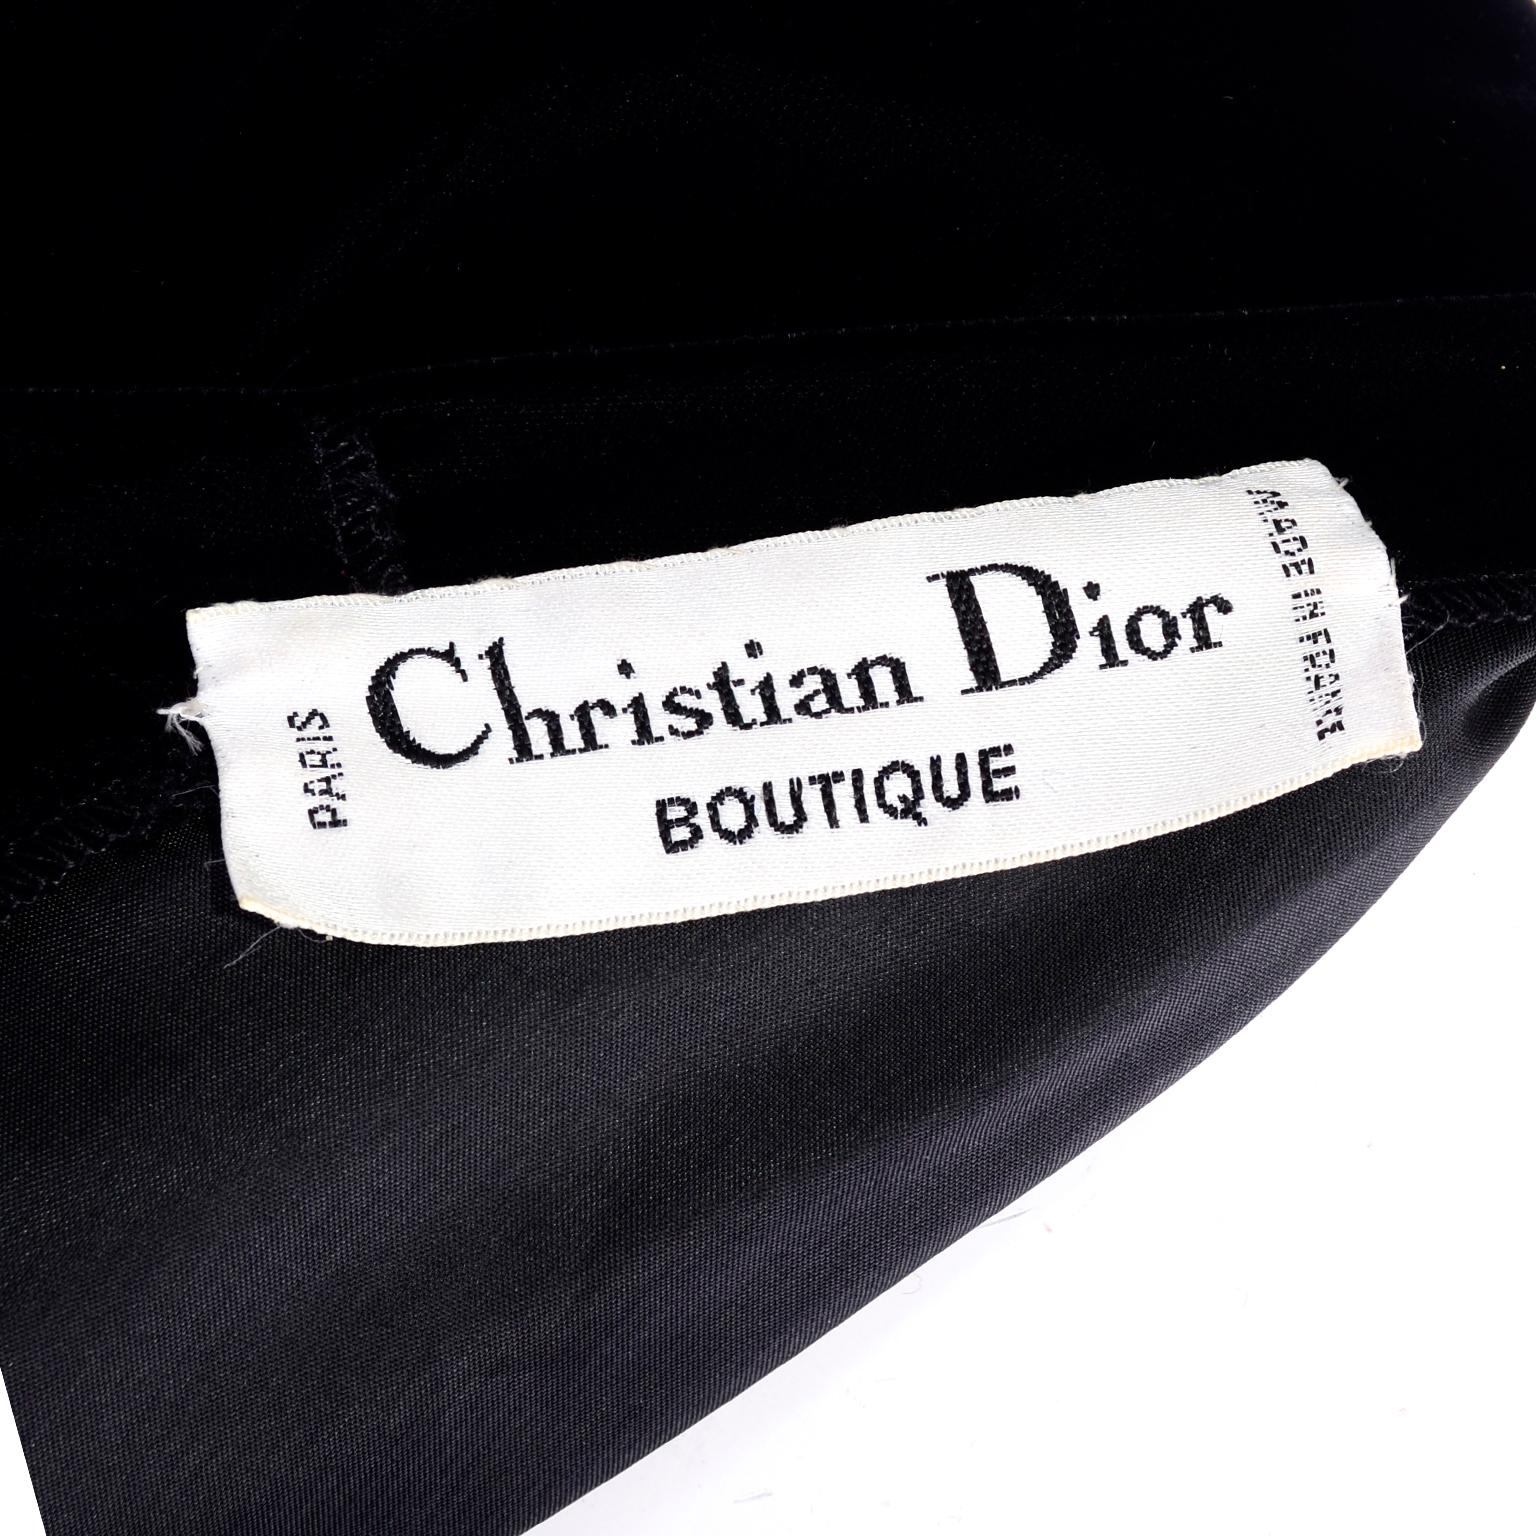 Vintage Christian Dior Black Velvet Evening Dress For Sale at 1stDibs